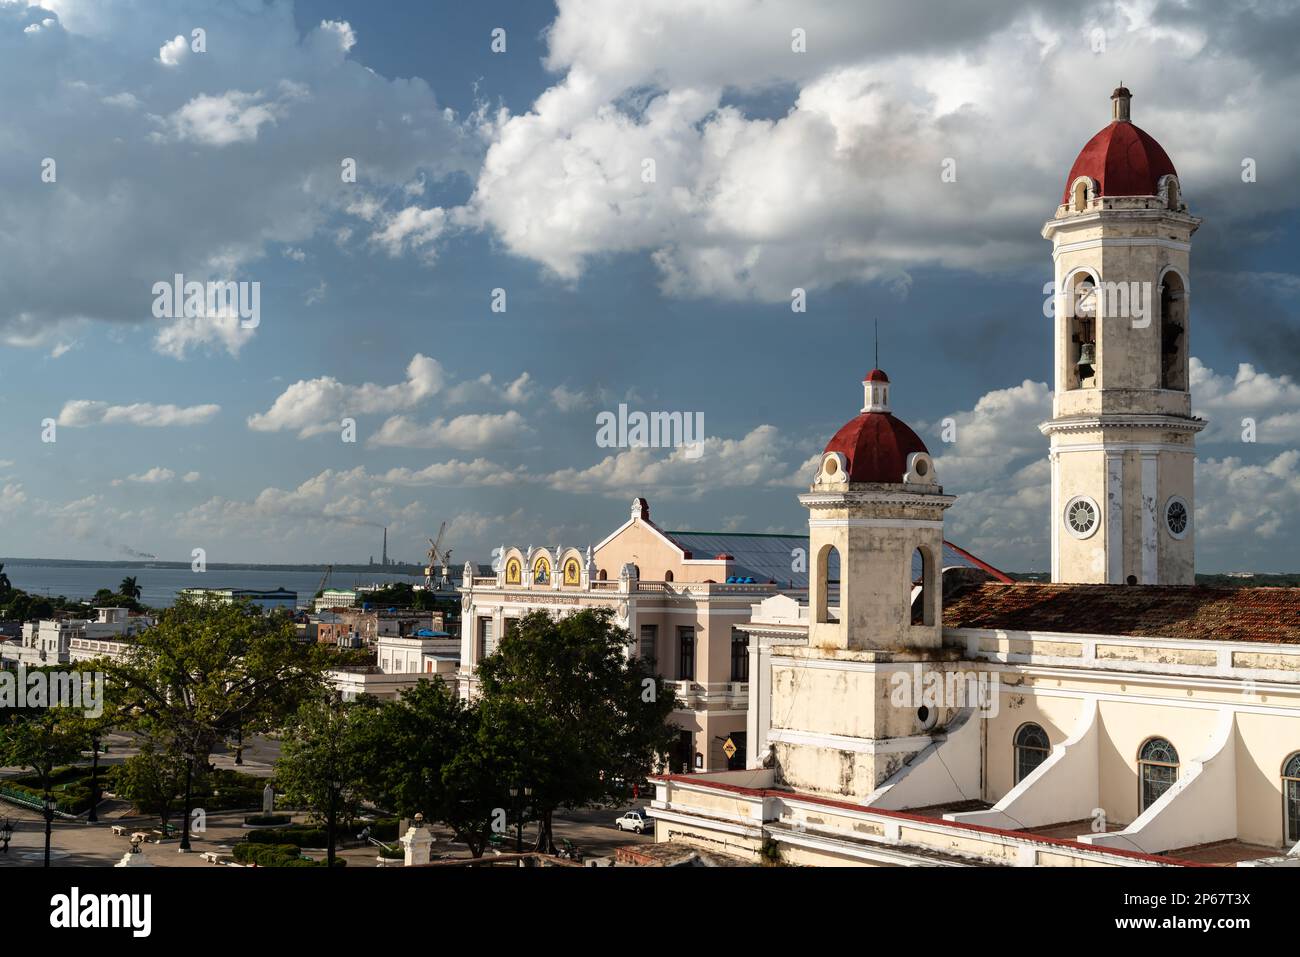 Vue aérienne de la place principale avec cathédrale, théâtre Tomas Terry et port derrière, Cienfuegos, UNESCO, Cuba, Antilles, Caraïbes Banque D'Images